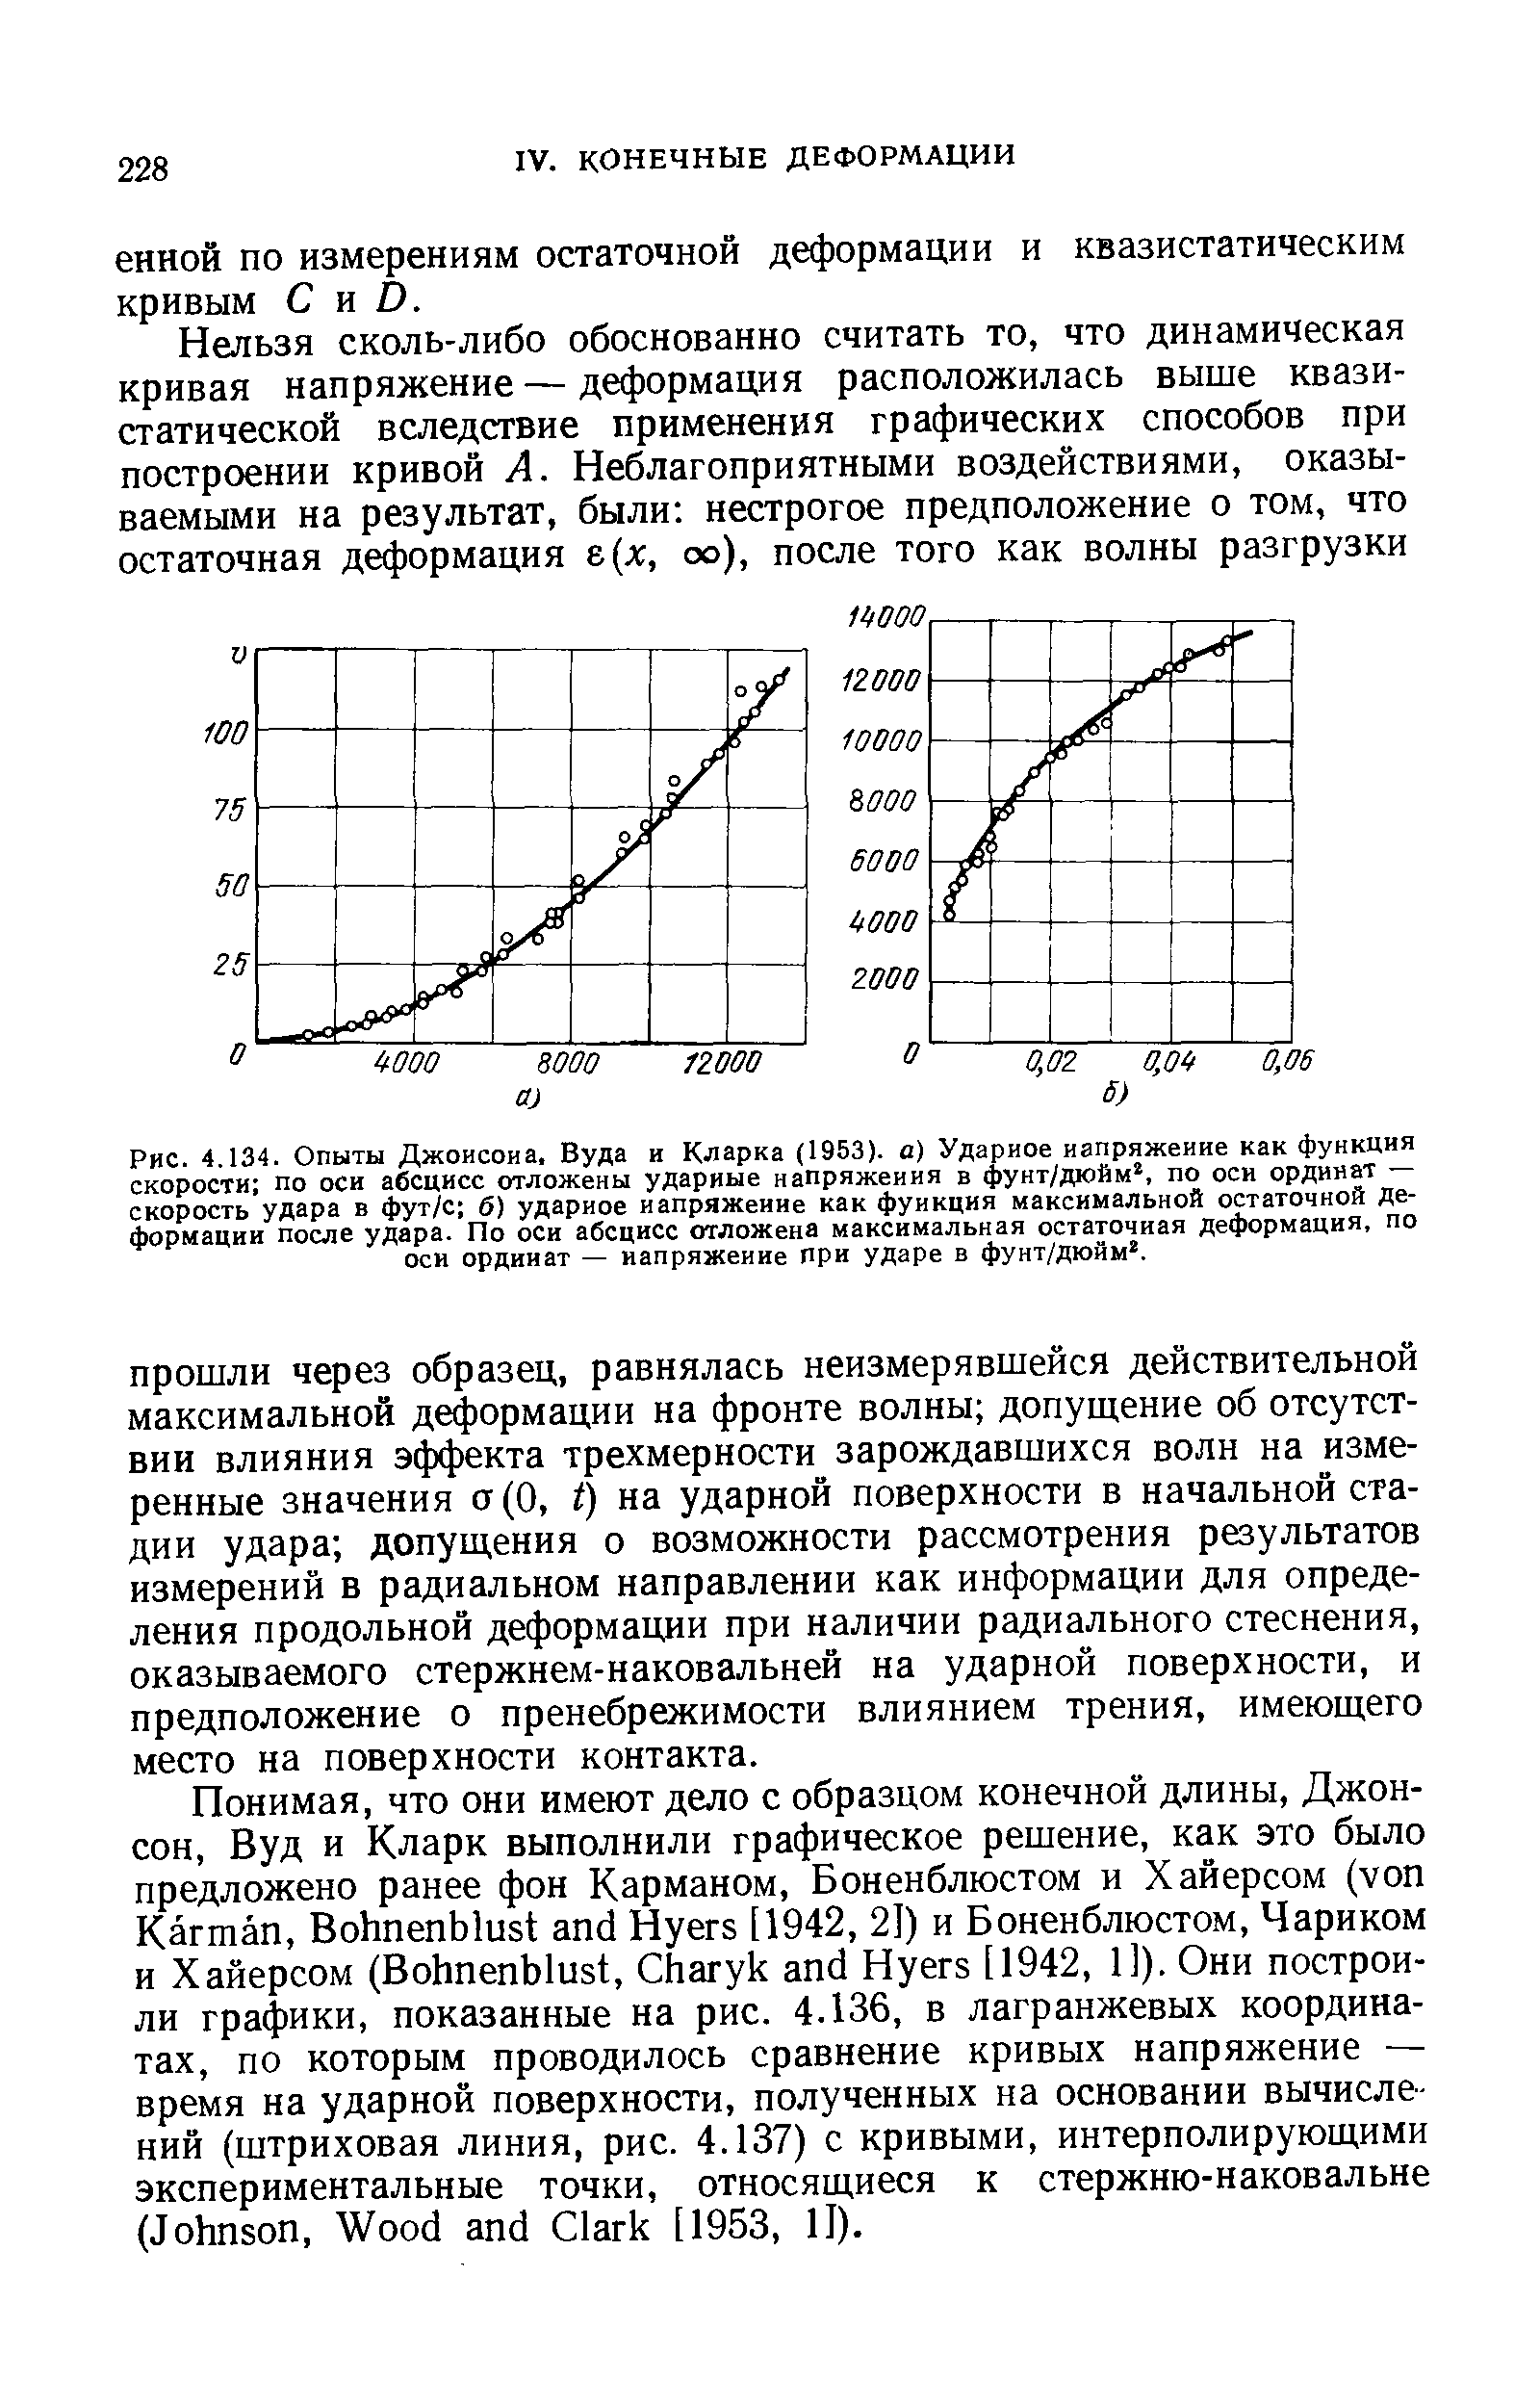 Рис. 4.134. Опыты Джоисоиа, Вуда и Кларка (1953). о) Ударное напряжение как <a href="/info/336">функция скорости</a> по оси абсцисс отложены ударные напряжения в фунт/дюйм, по оси ординат — скорость удара в фут/с б) ударное напряжение как функция максимальной остаточной Деформации после удара. По оси абсцисс отложена максимальная остаточная деформация, по оси ординат — напряжение при ударе в фунт/дюйм. 
